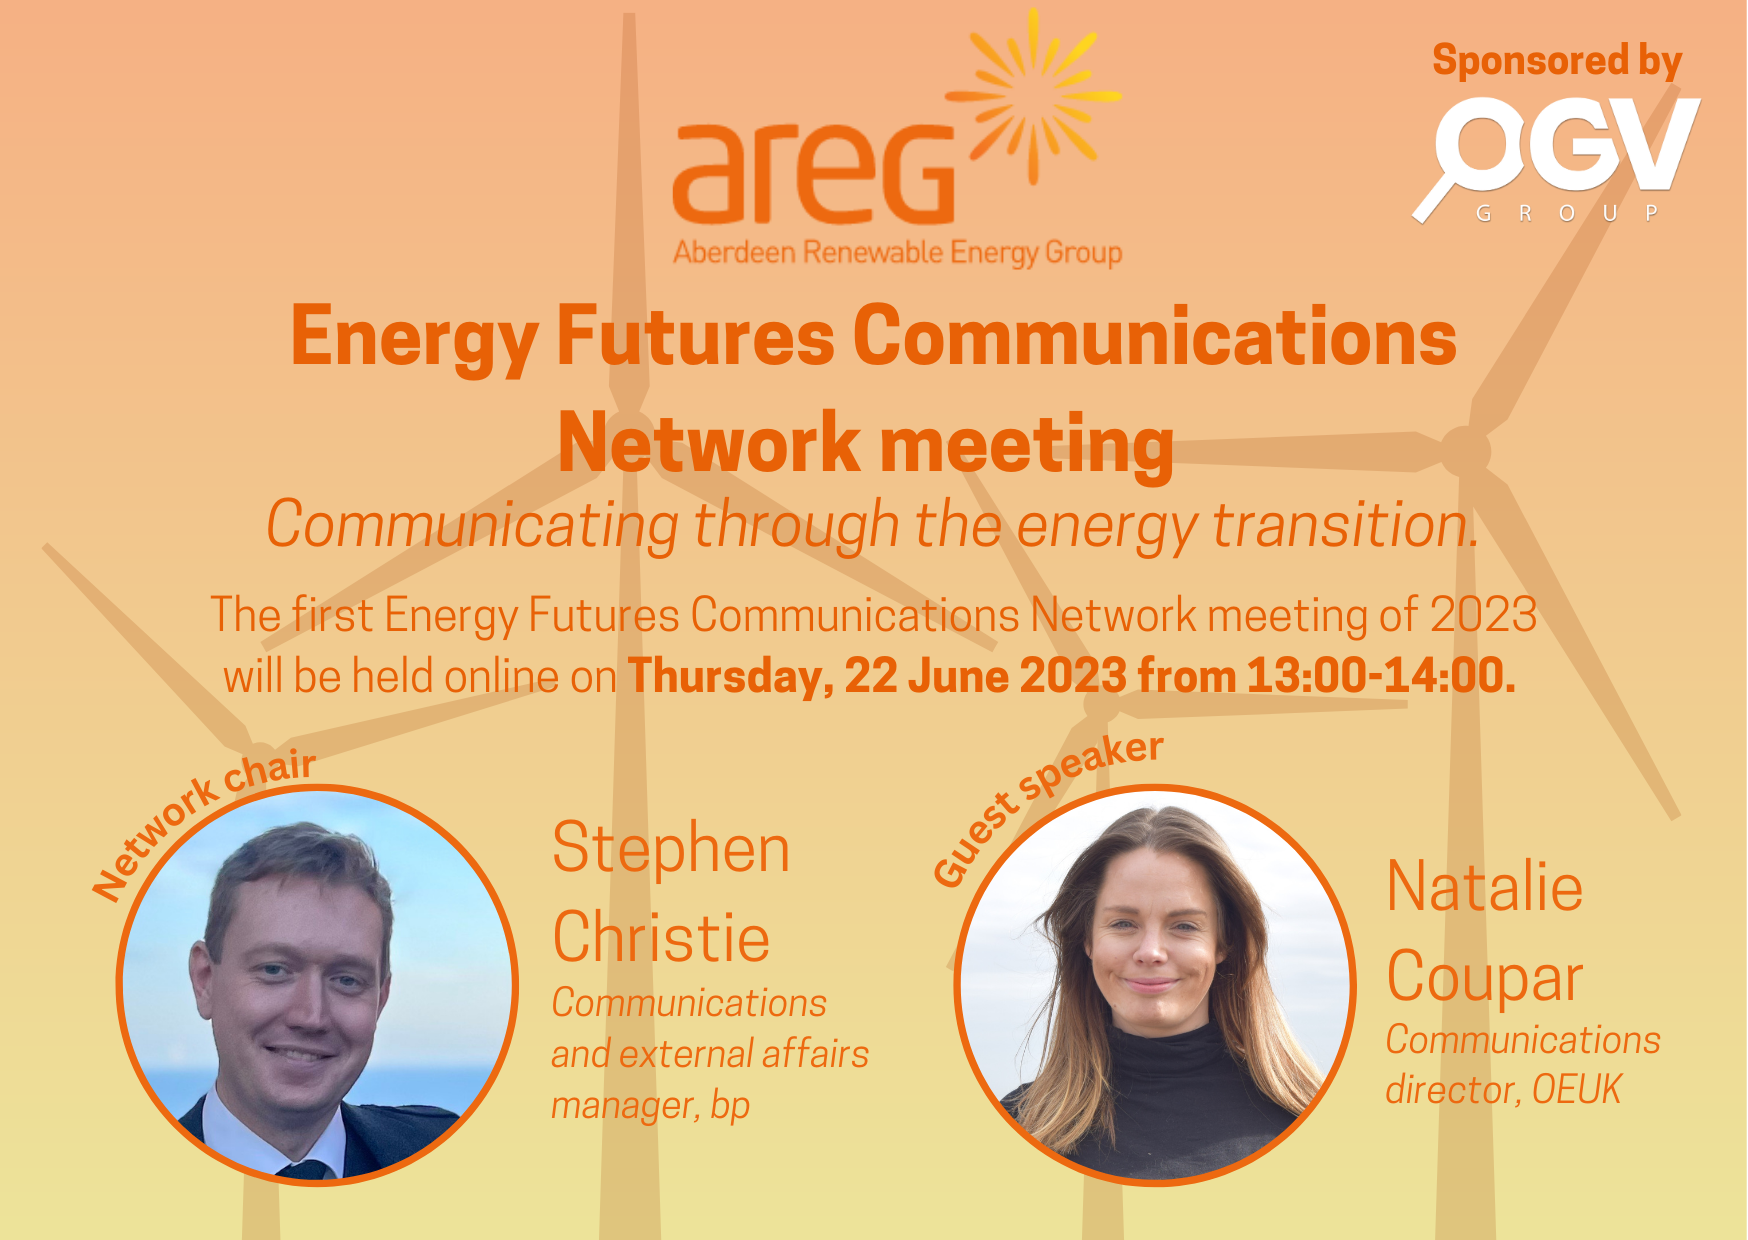 AREG NEWS: OGV Energy Media Group to sponsor AREG Communications Network